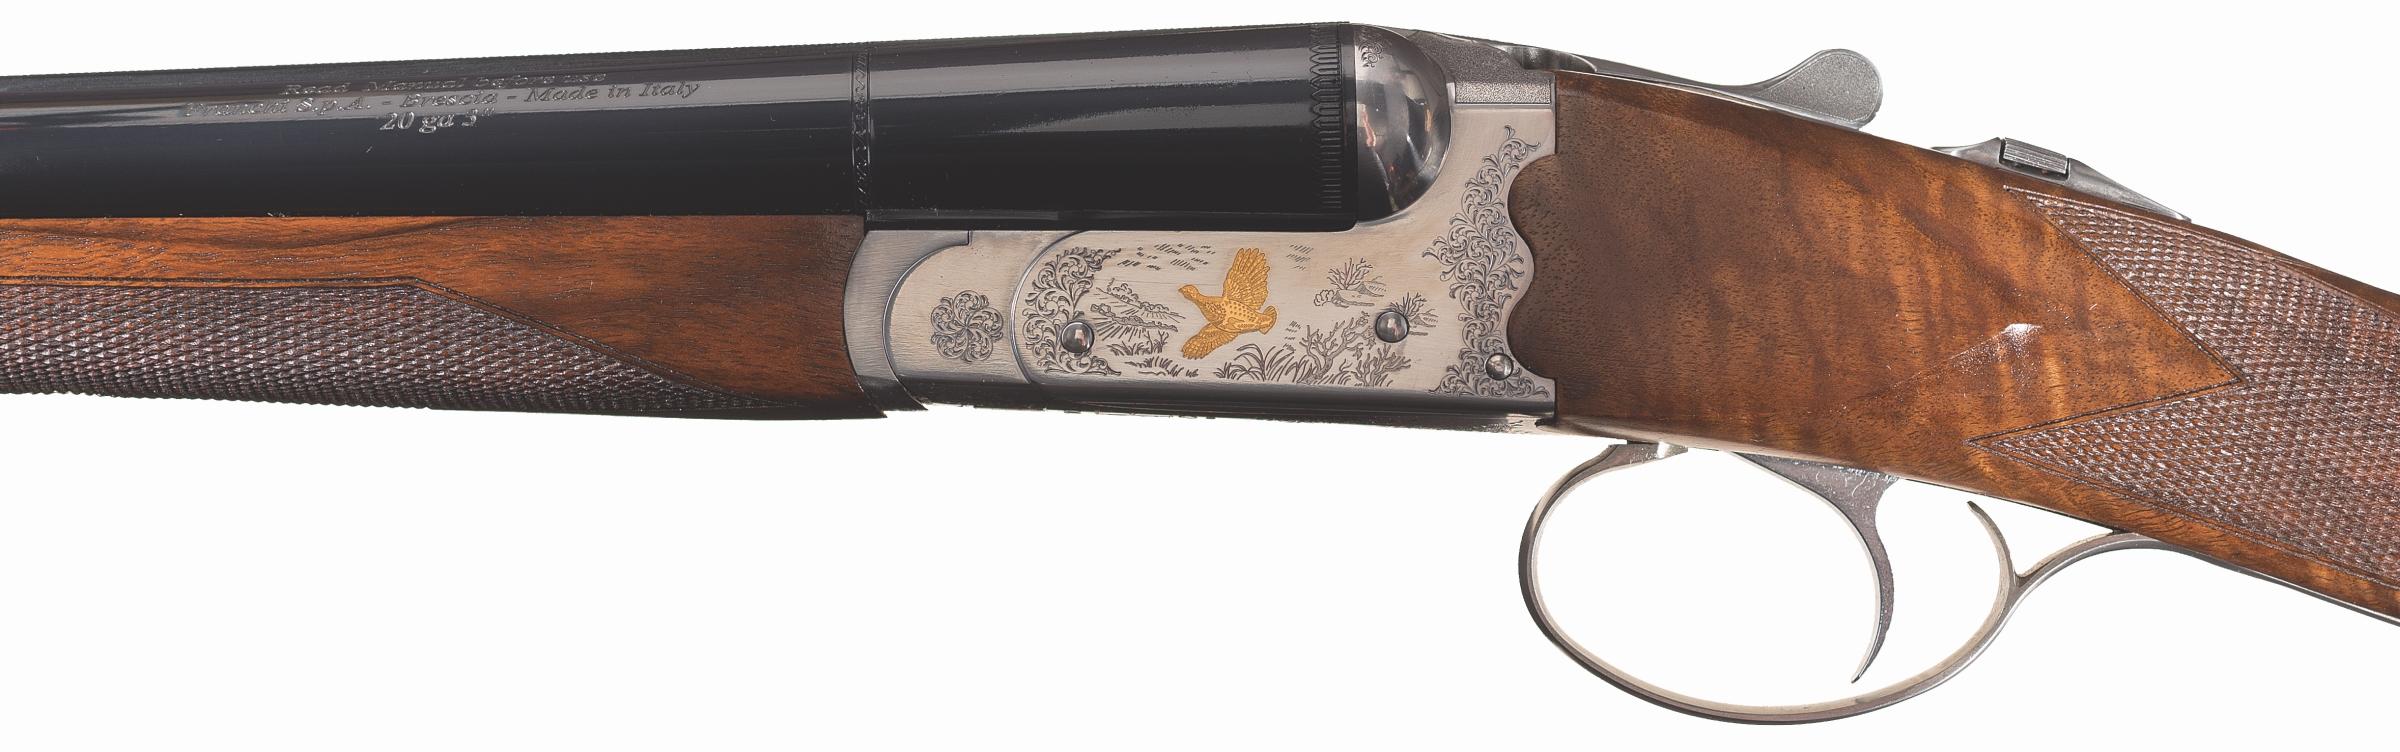 Engraved Franchi Destino Boxlock 20 Gauge Side by Side Shotgun